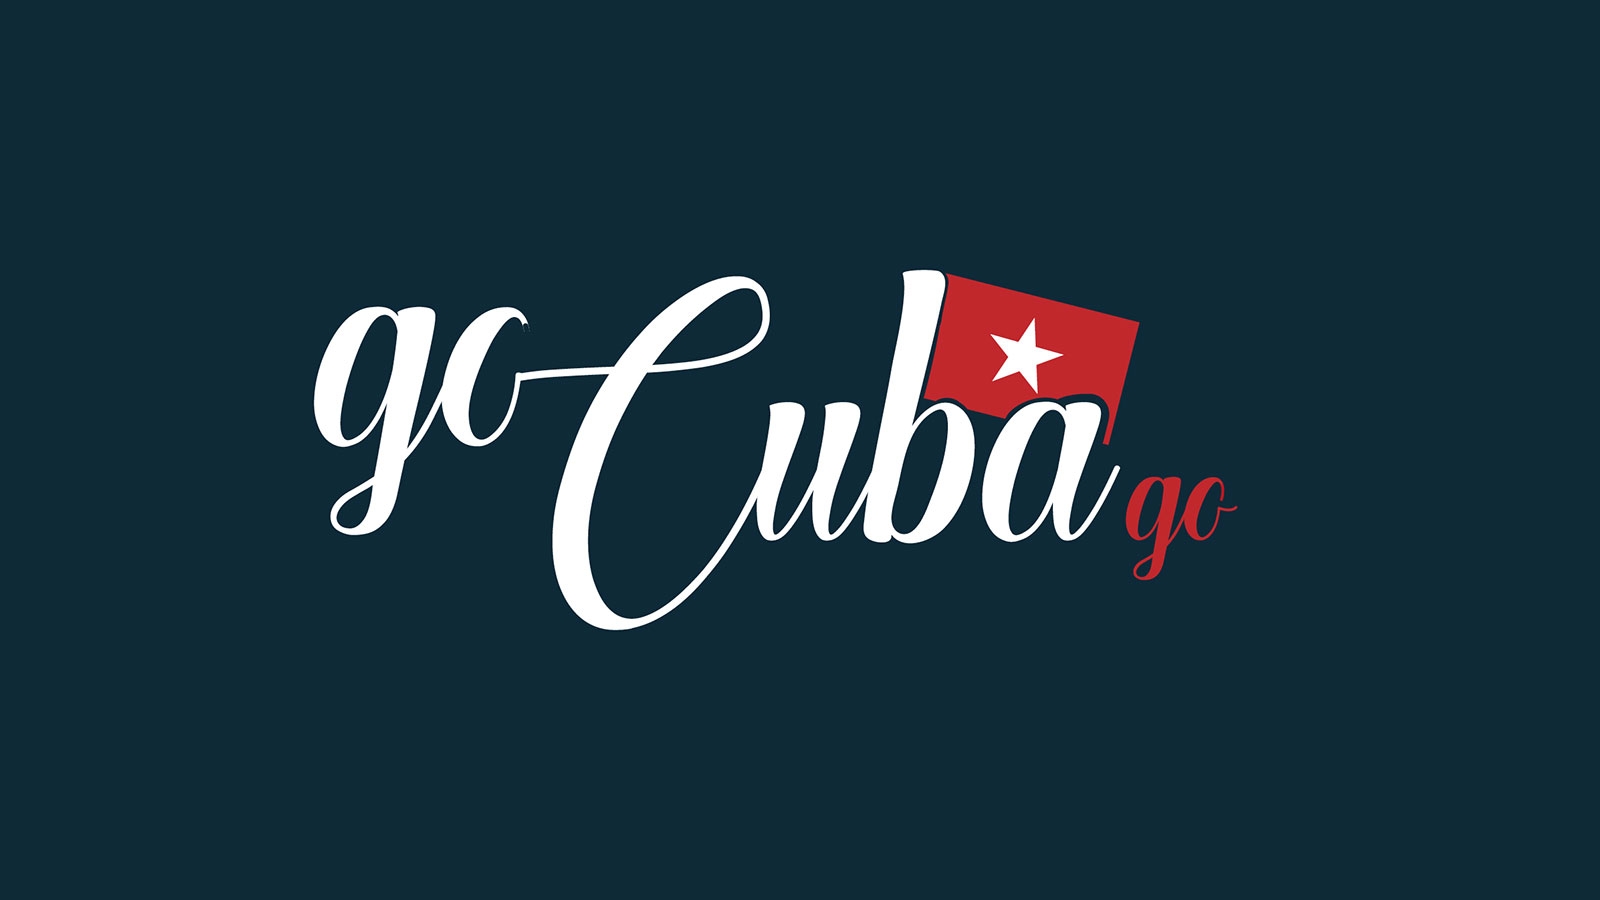 Go Cuba Go | gocubago.com | 2018 (Logo No 01) © echonet communication GmbH